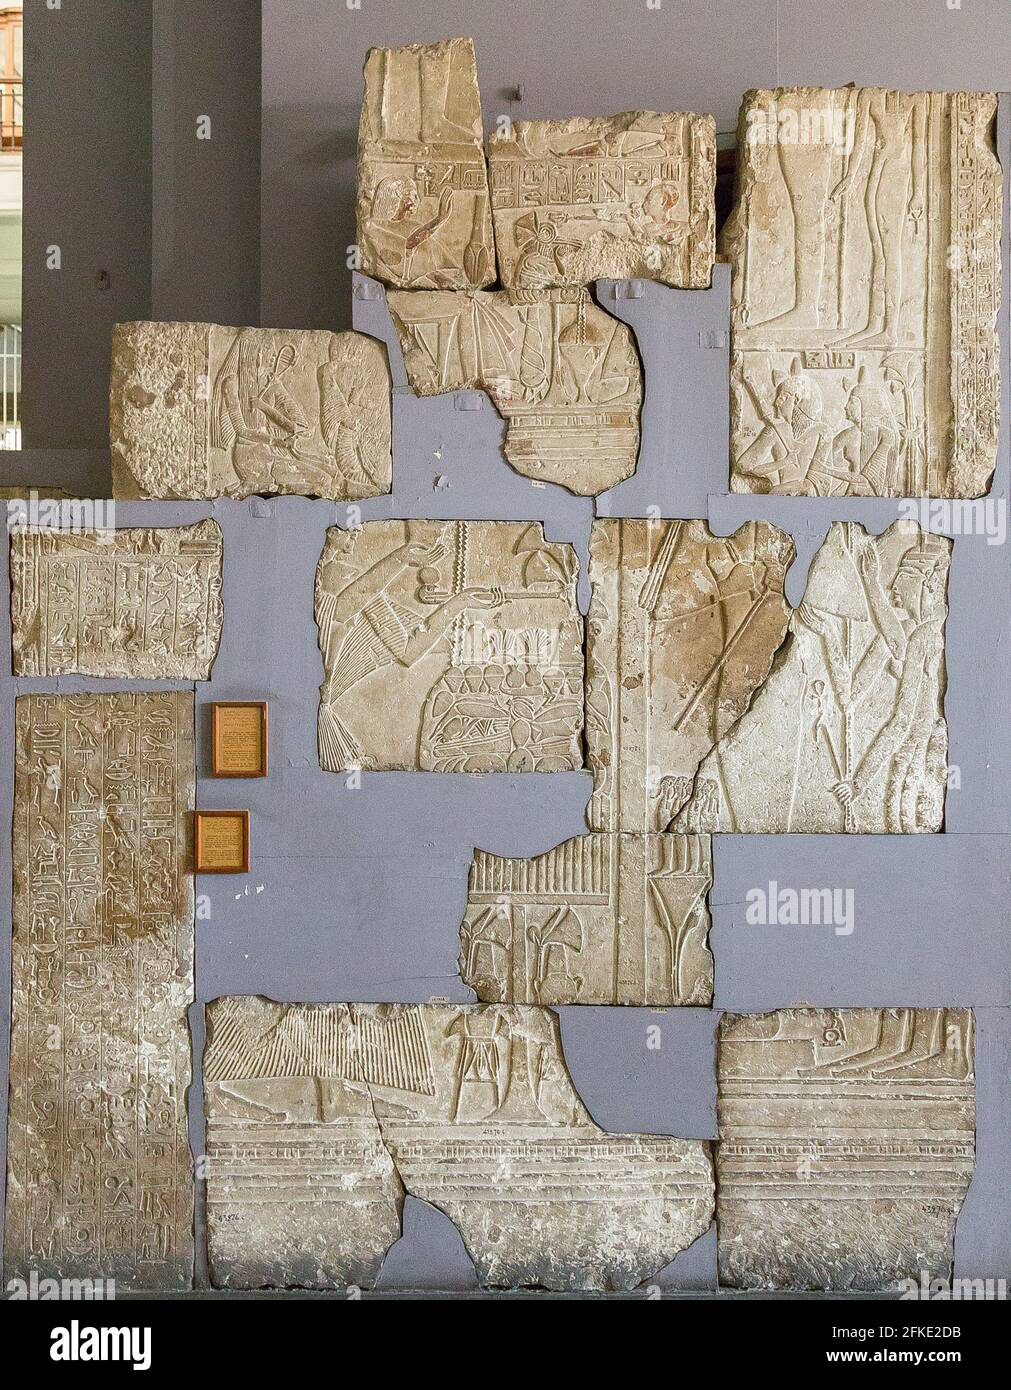 Le Caire, Musée égyptien, kaléidoscope de reliefs du Nouveau Royaume, de Saqqara. Banque D'Images